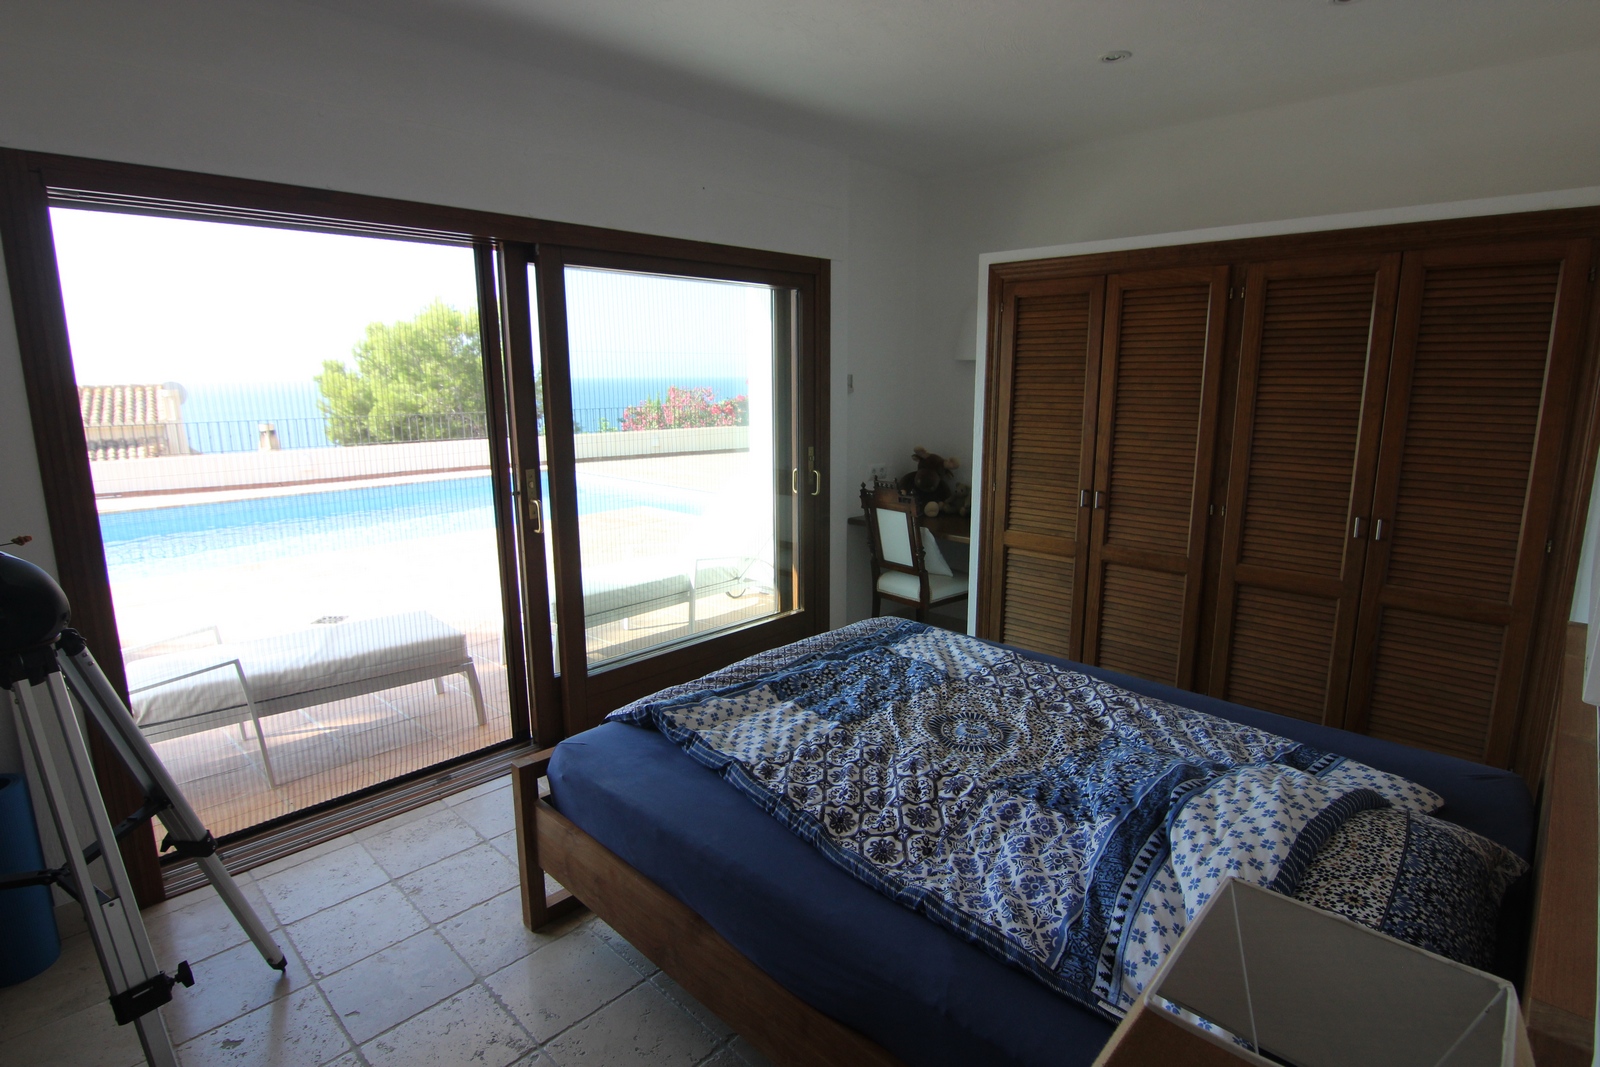 Villa de luxe à vendre en bord de mer à Cap Blanc.